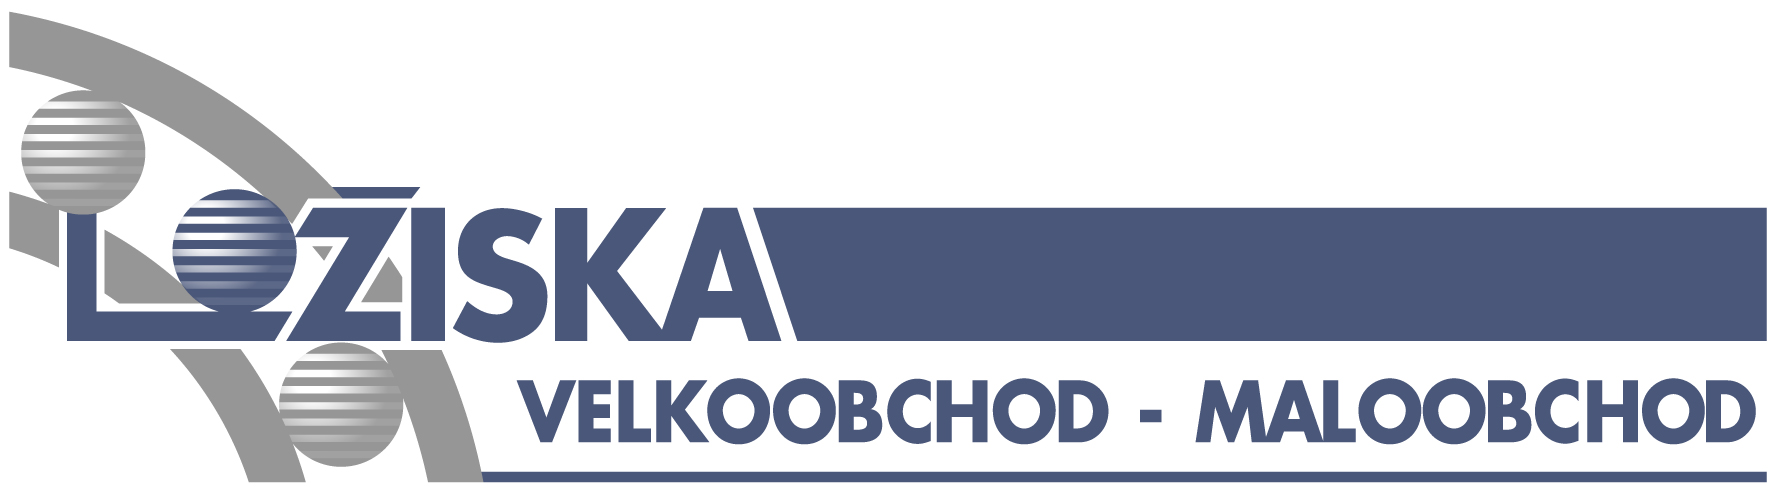 Ložiska-Polička---logo